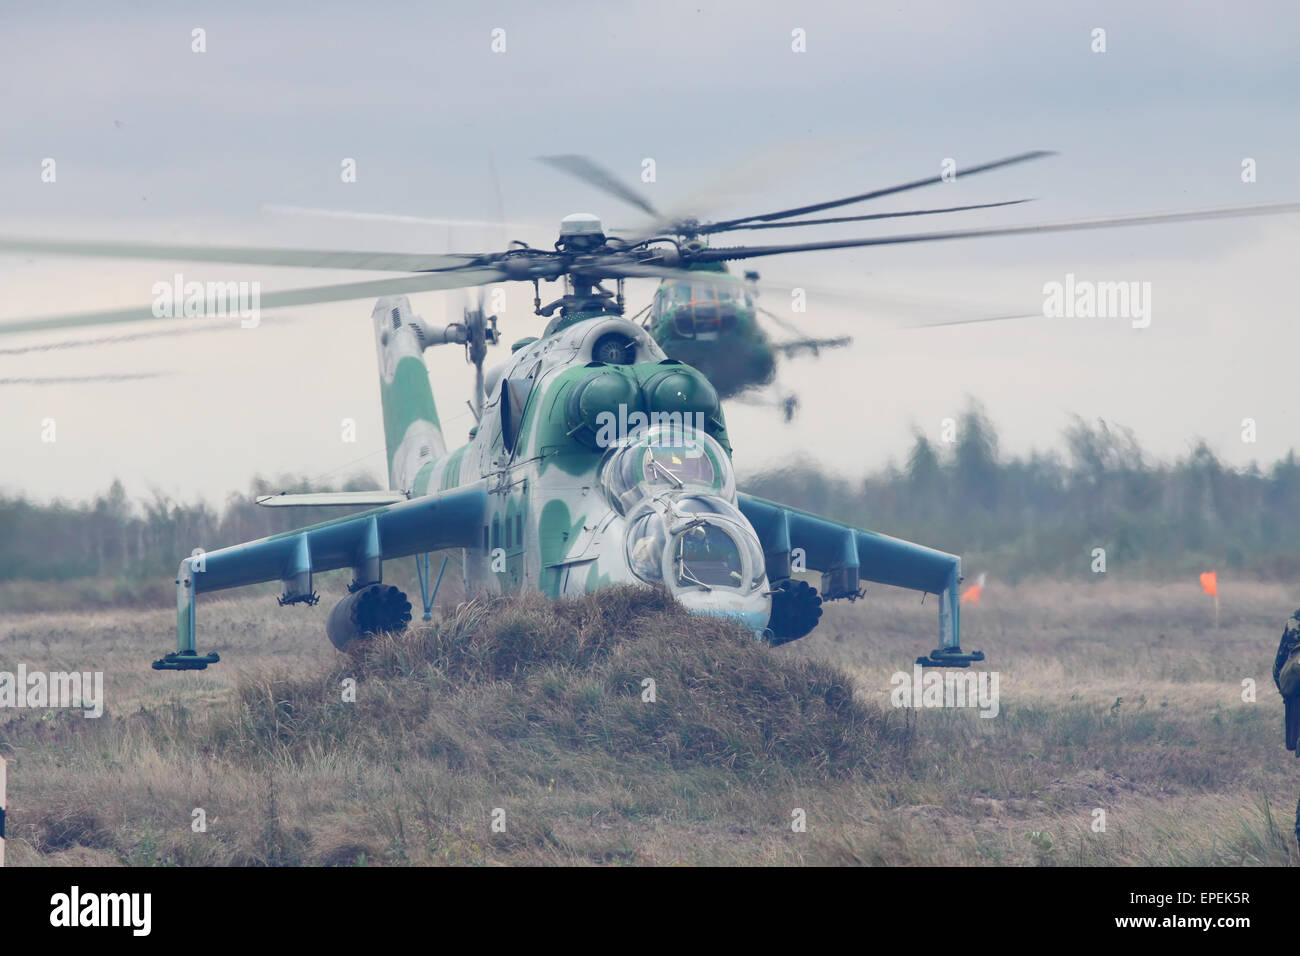 Shitomir, Ukraine - 29. September 2010: Ukrainische Armee Mi-24 Kampfhubschrauber während der militärischen Ausbildung Stockfoto